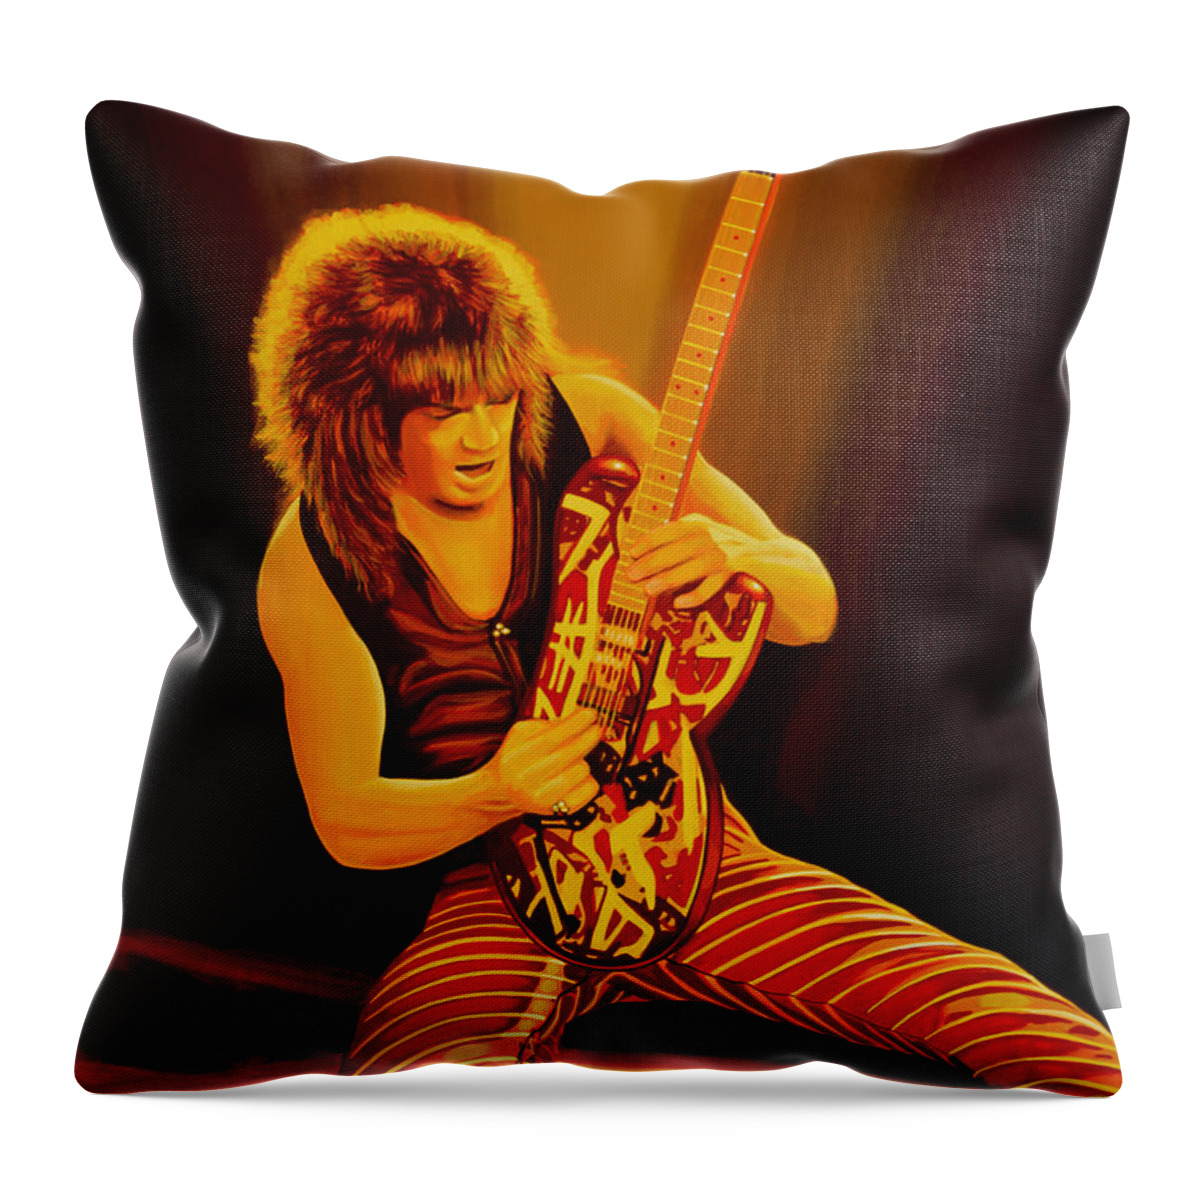 Eddie Van Halen Throw Pillow featuring the painting Eddie van Halen Painting by Paul Meijering